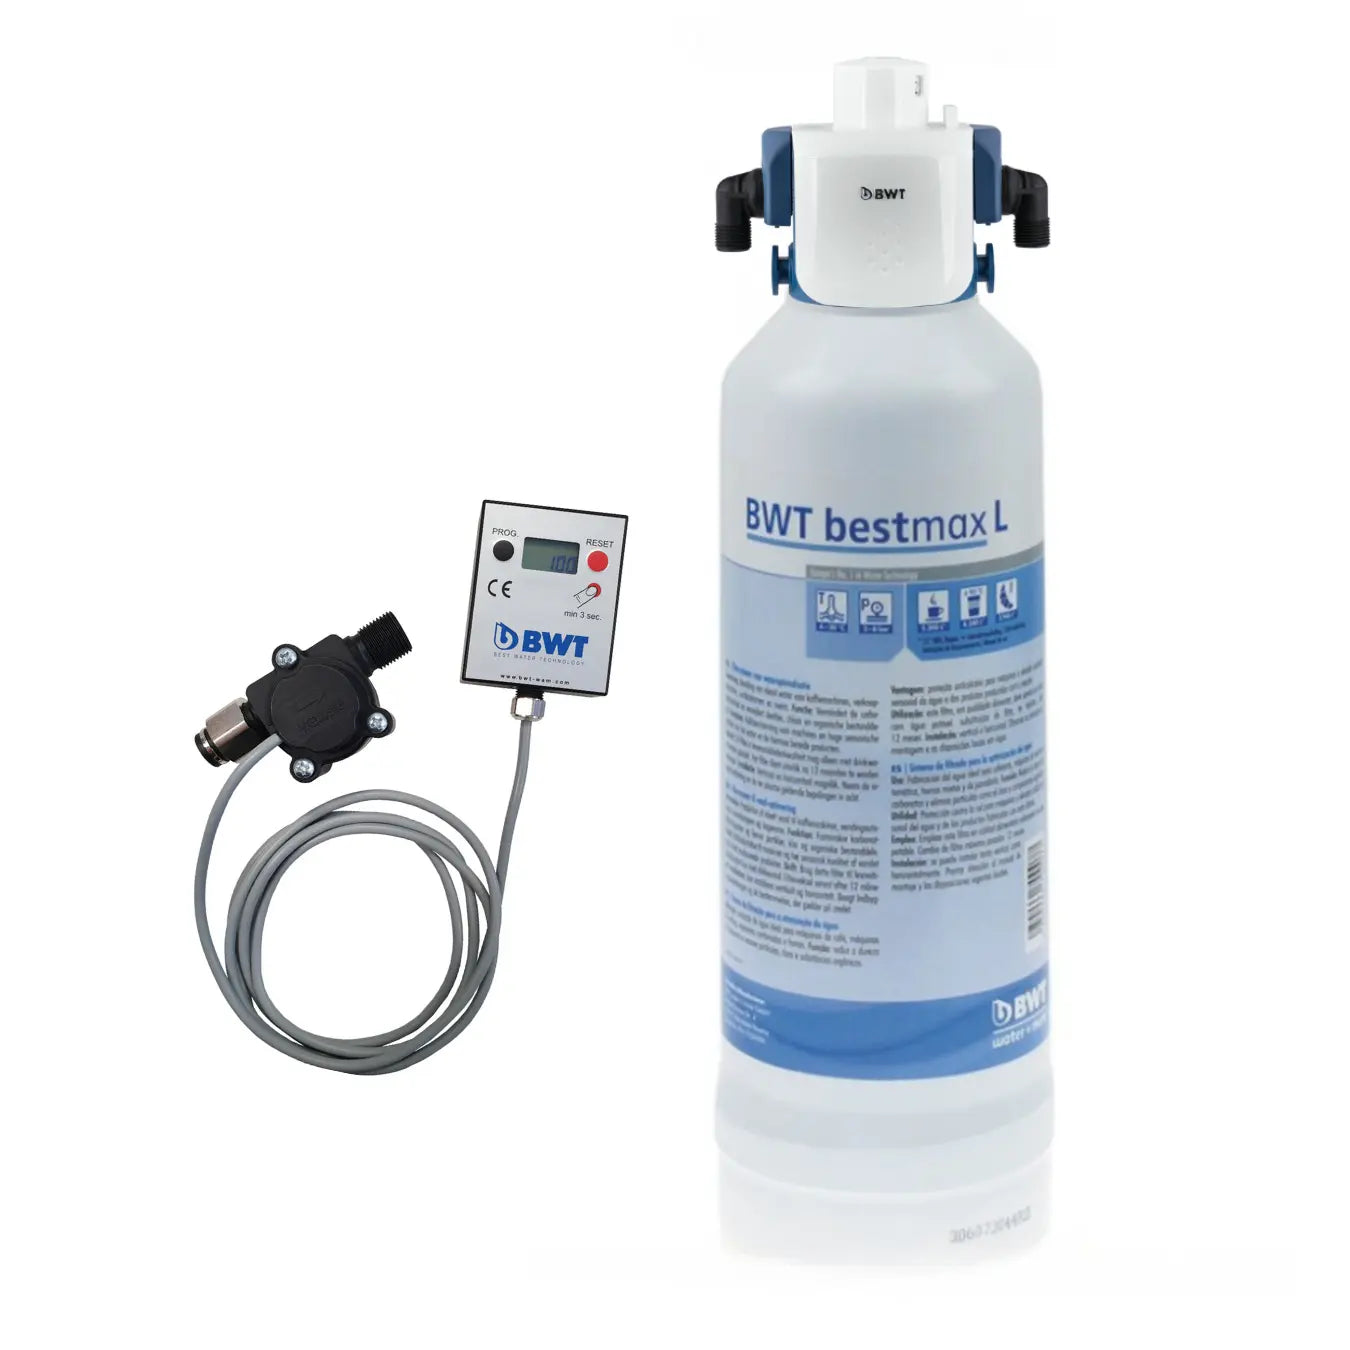 BWT bestmax L with besthead FLEX & aquameter Bwt